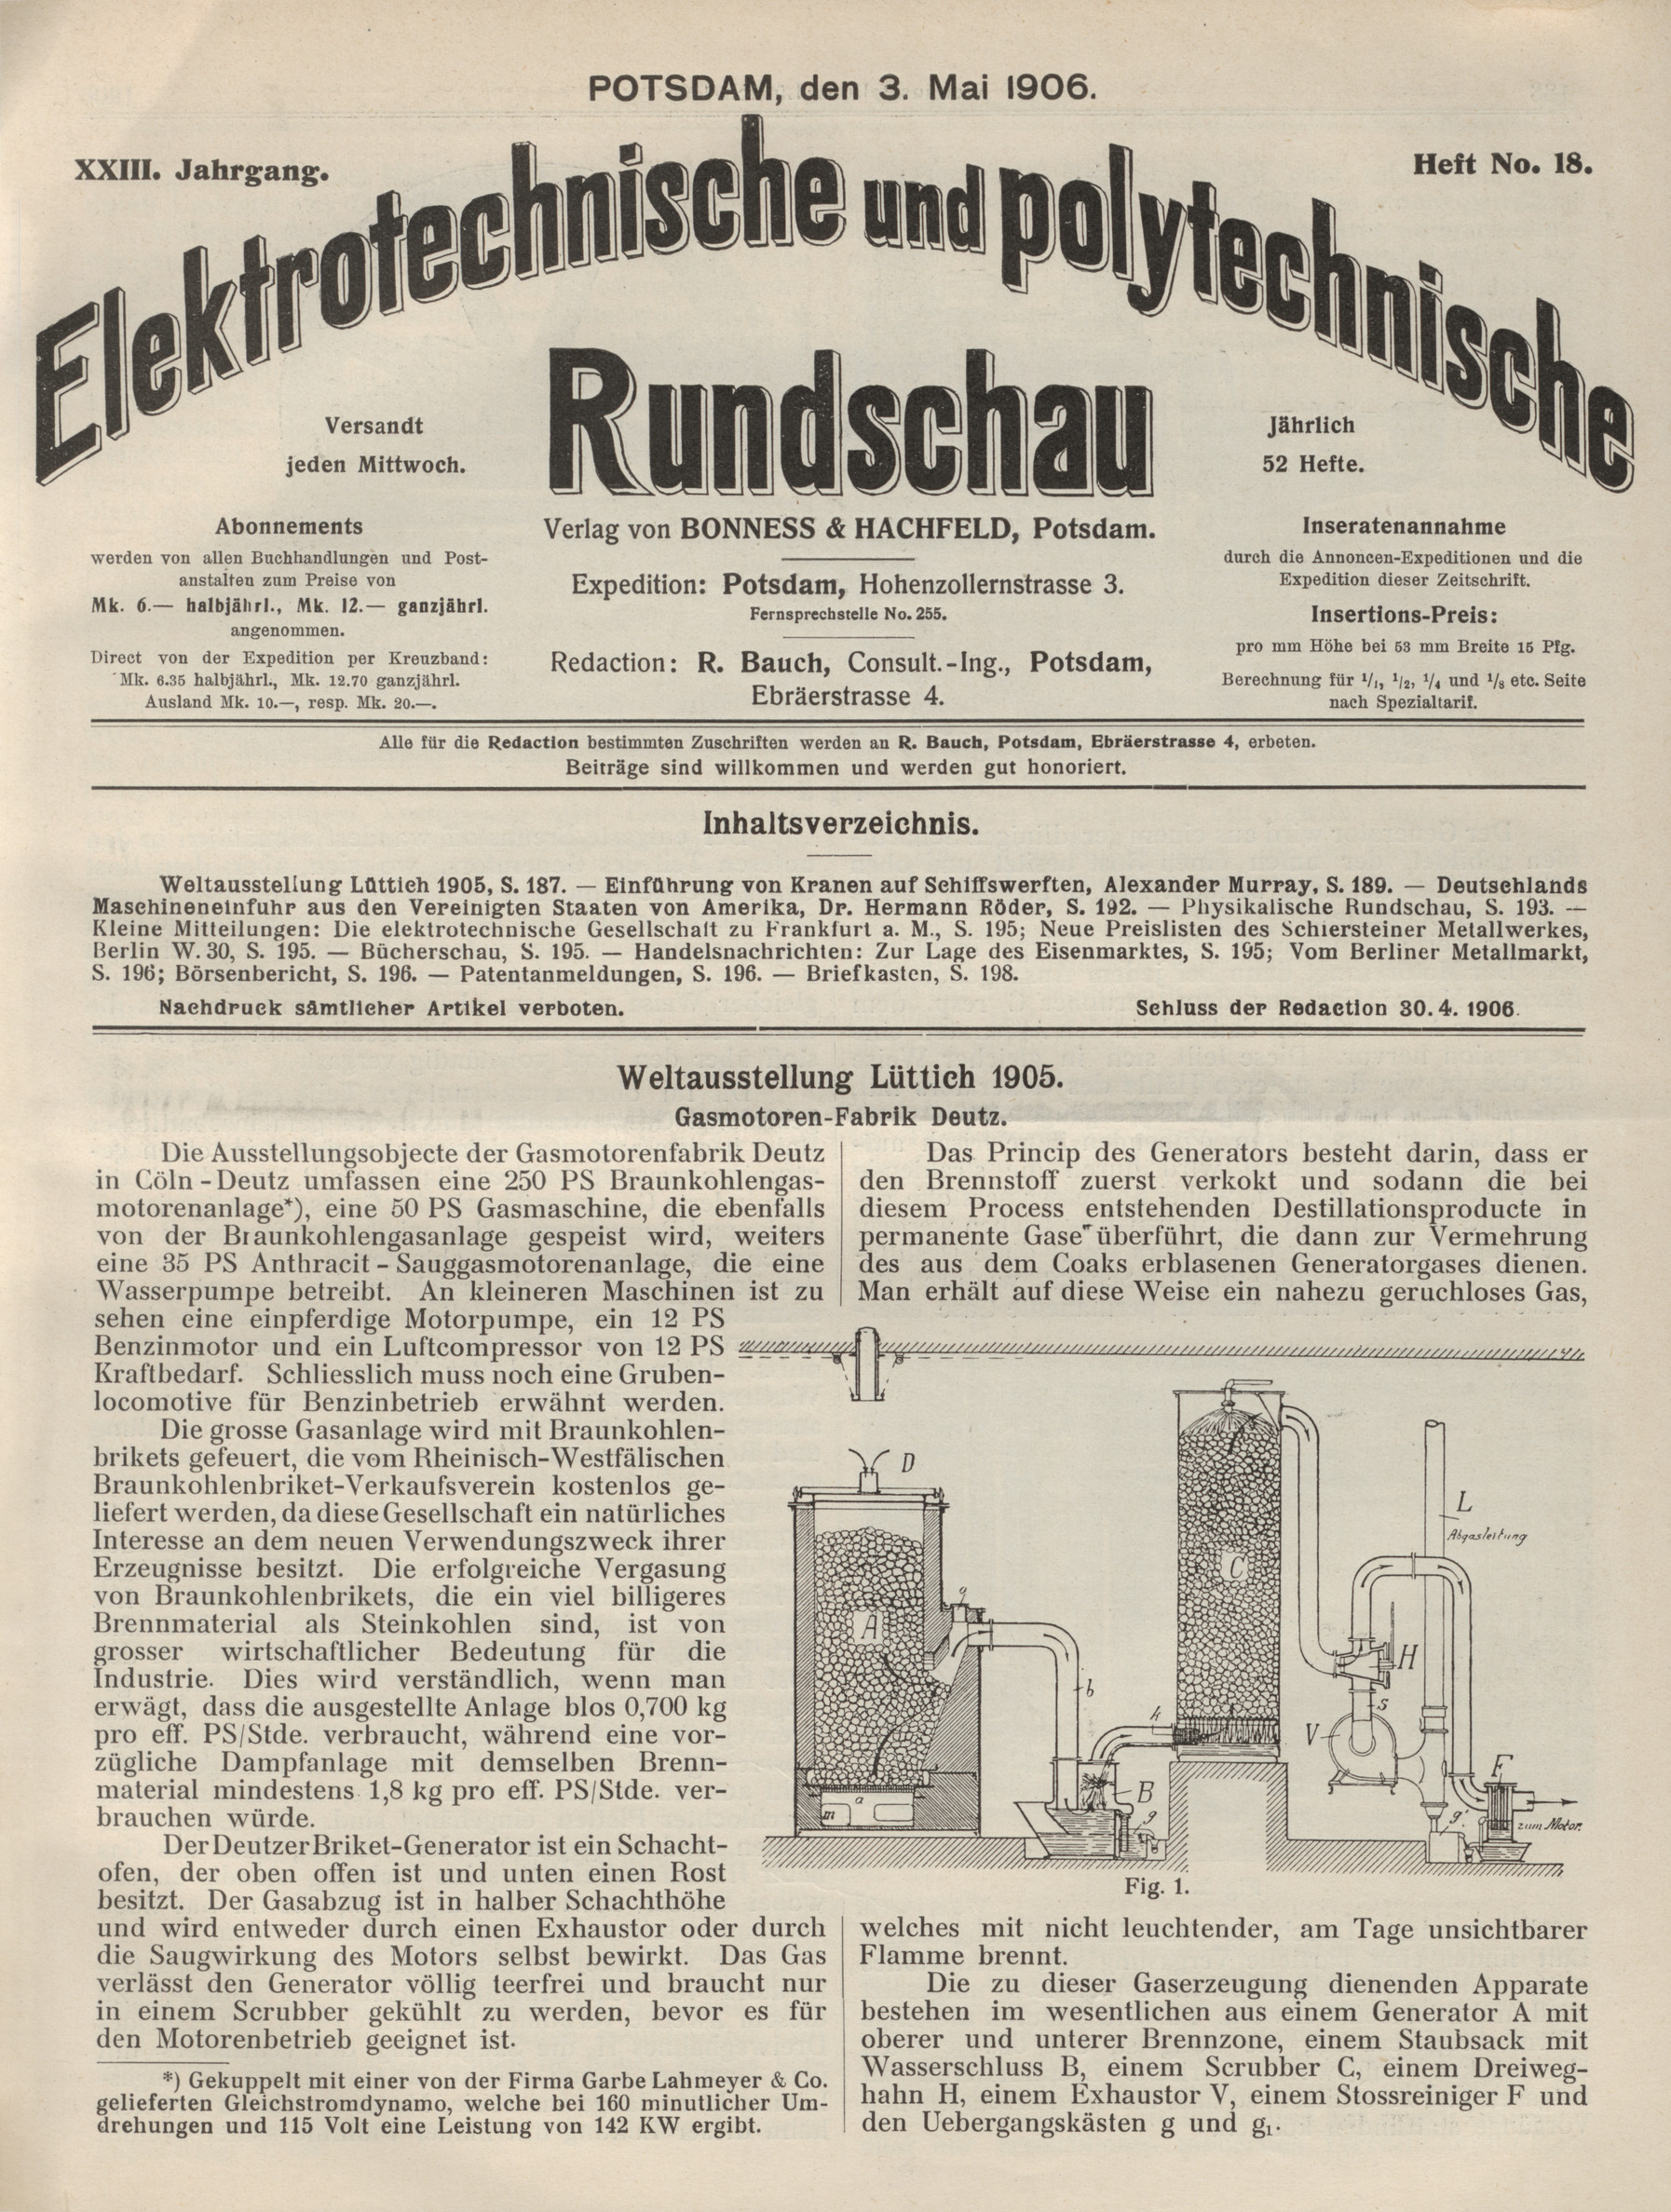 Elektrotechnische und polytechnische Rundschau, XXIII. Jahrgang, Heft No. 18